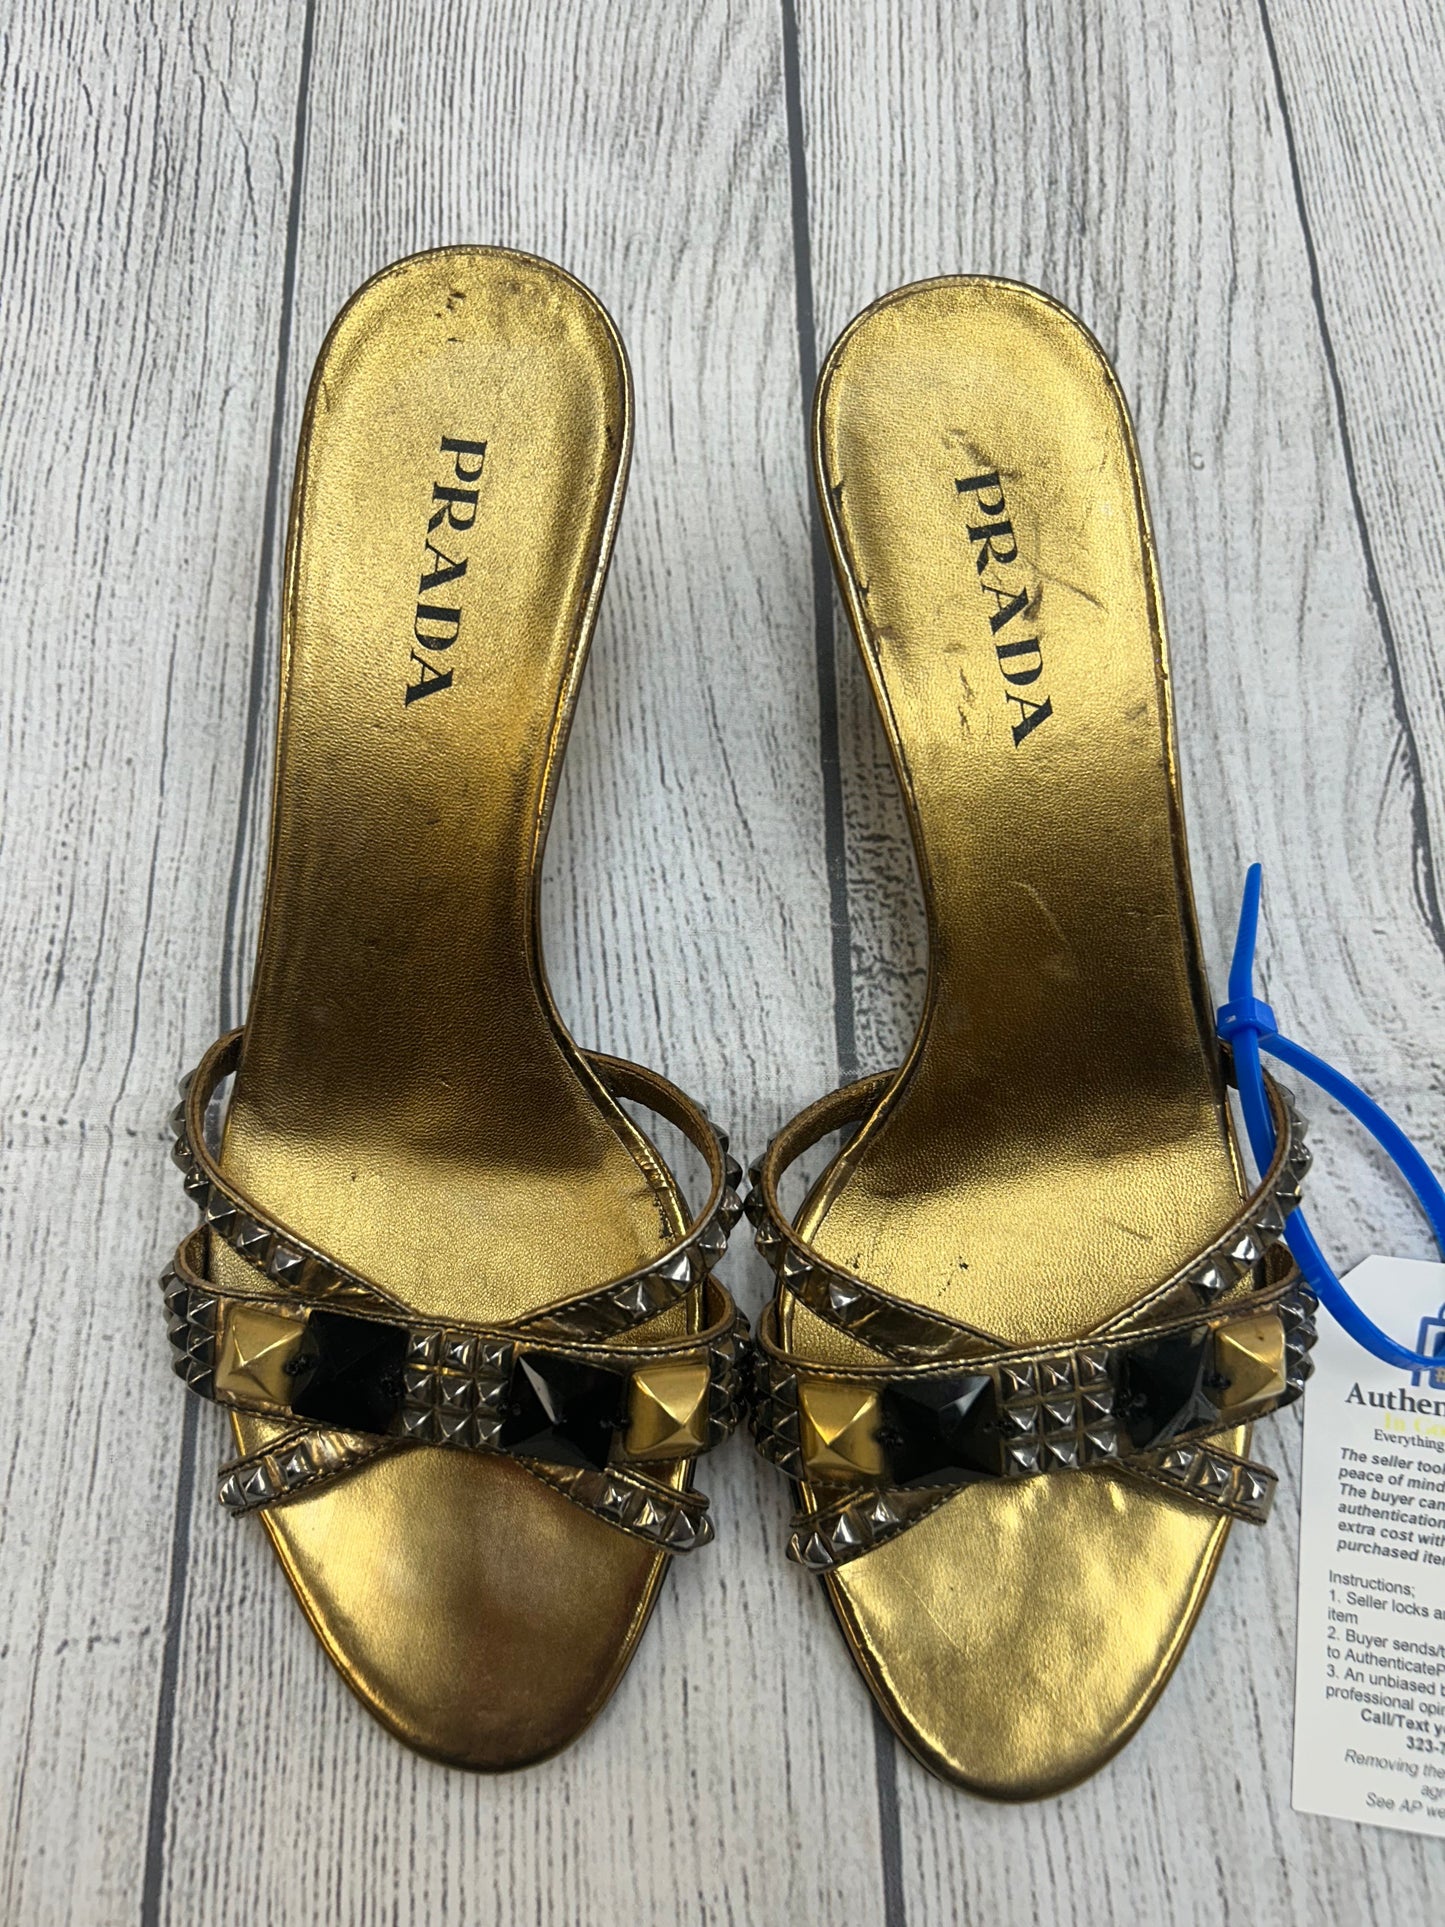 Shoes Heels Stiletto By Prada  Size: 7